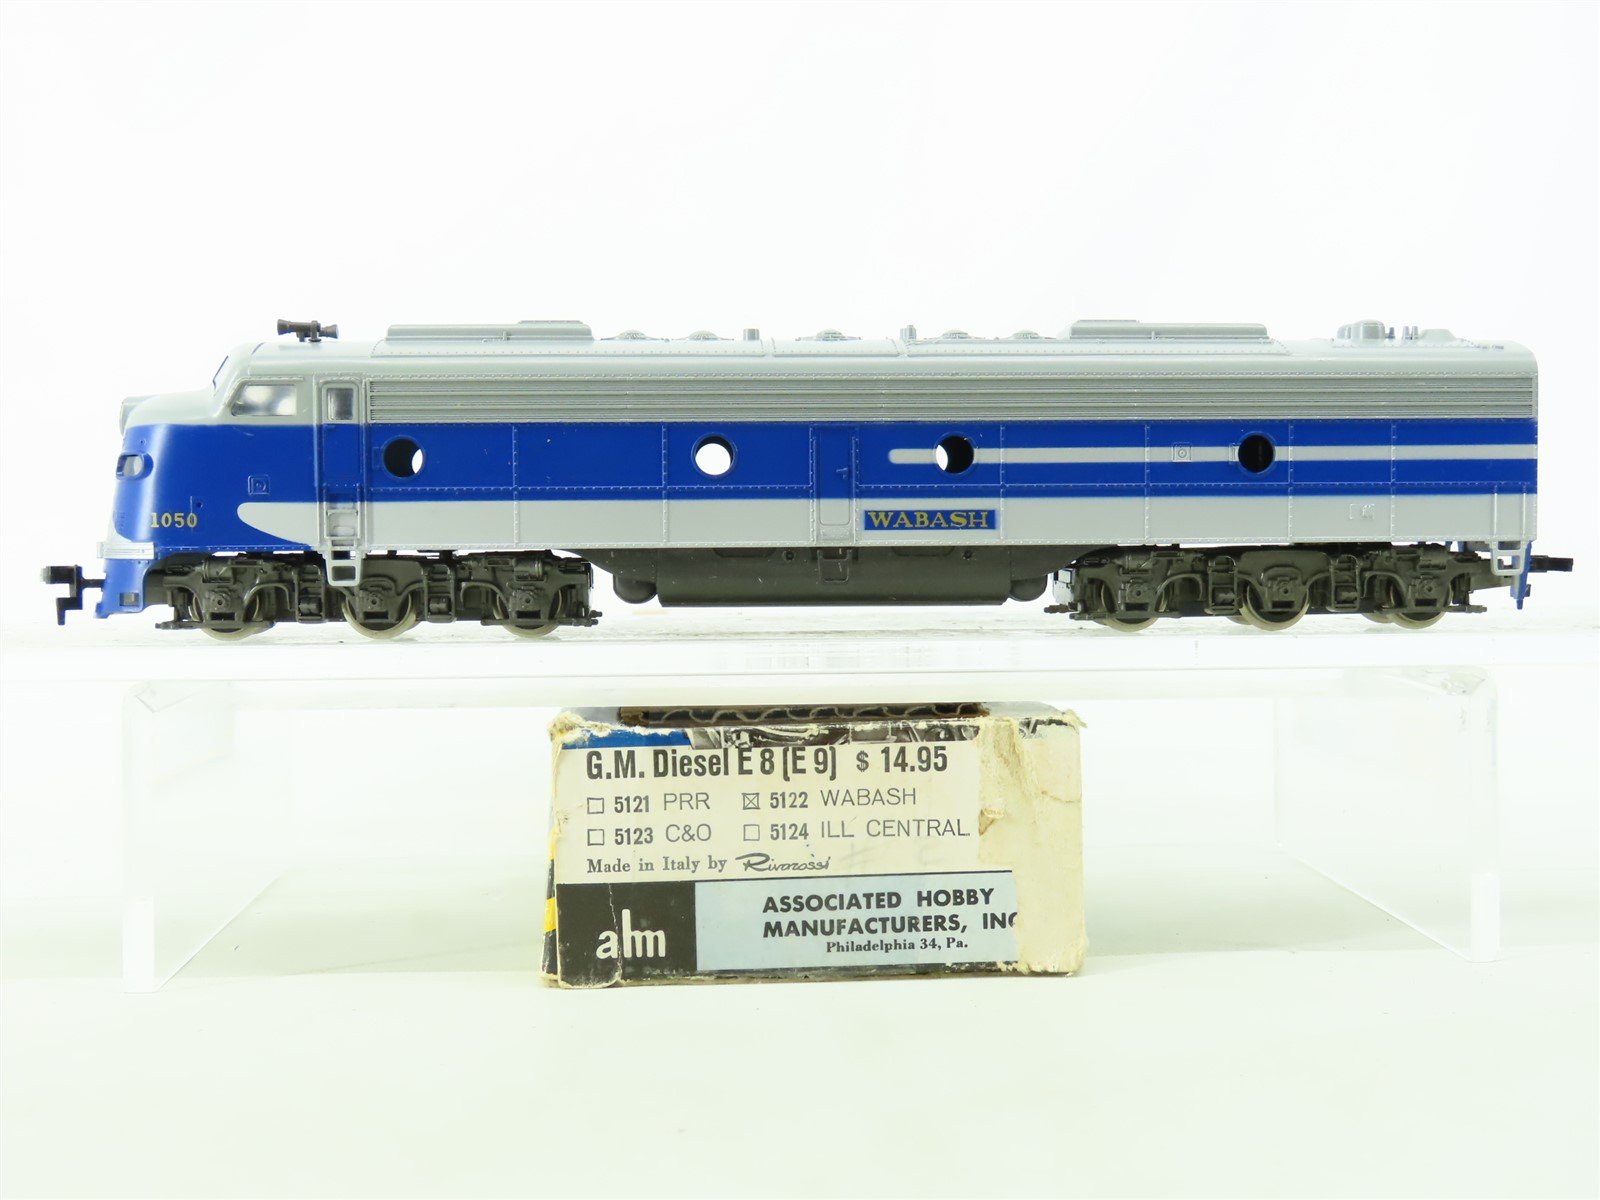 HO Scale AHM/Rivarossi 5122 WAB Wabash EMD E8/9A Diesel Locomotive #1050